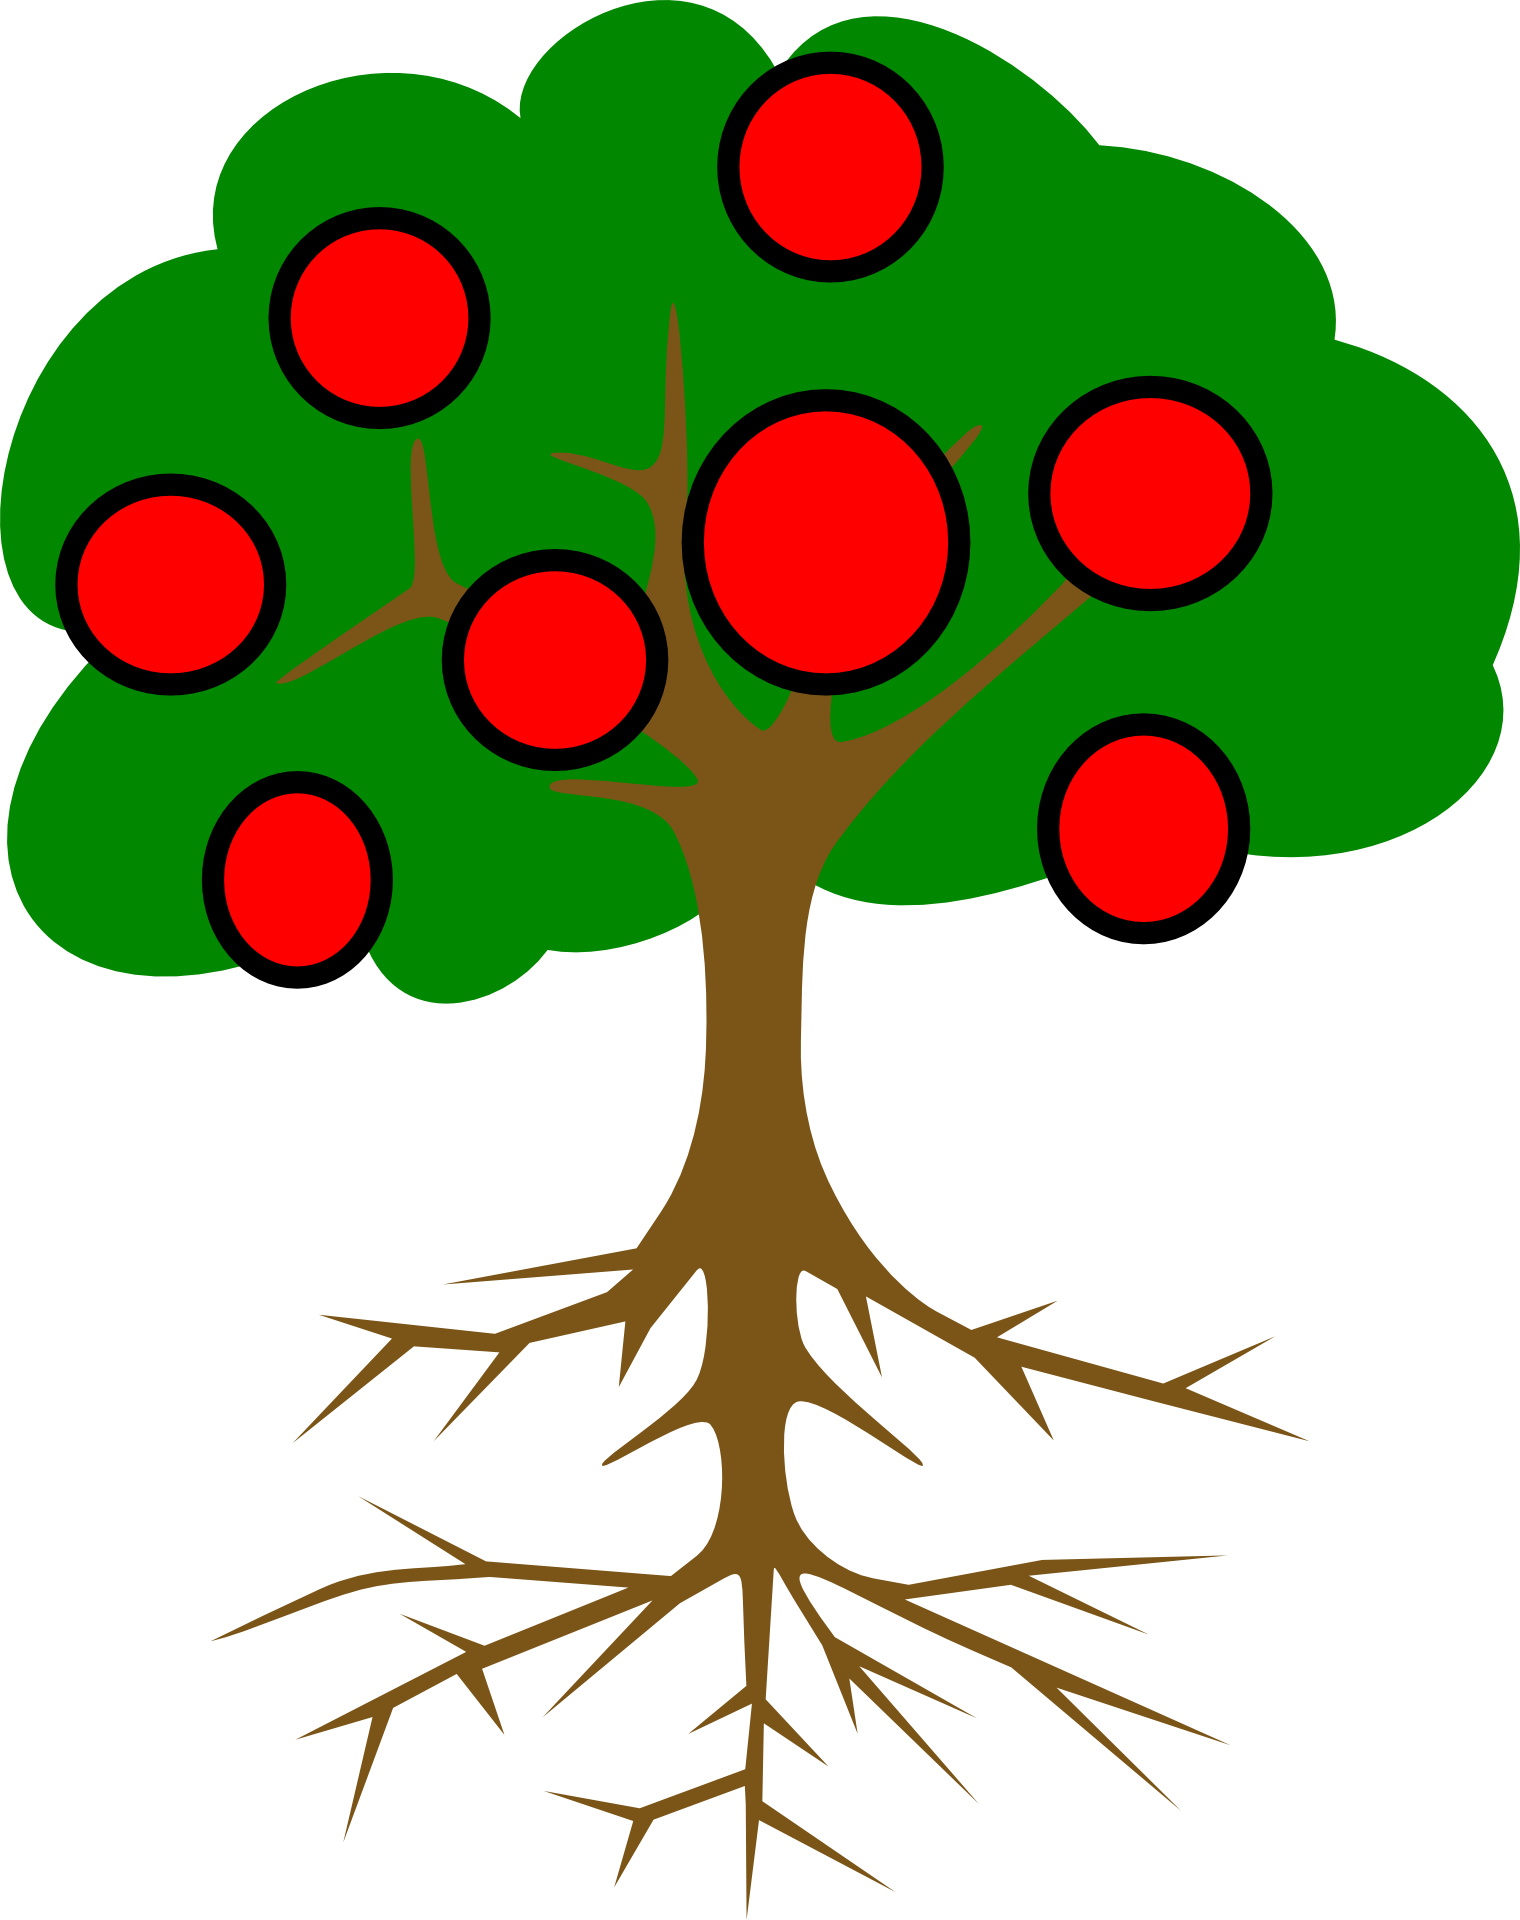 Tree Root Branch Clip Art - Tree Root Branch Clip Art (1520x1920)